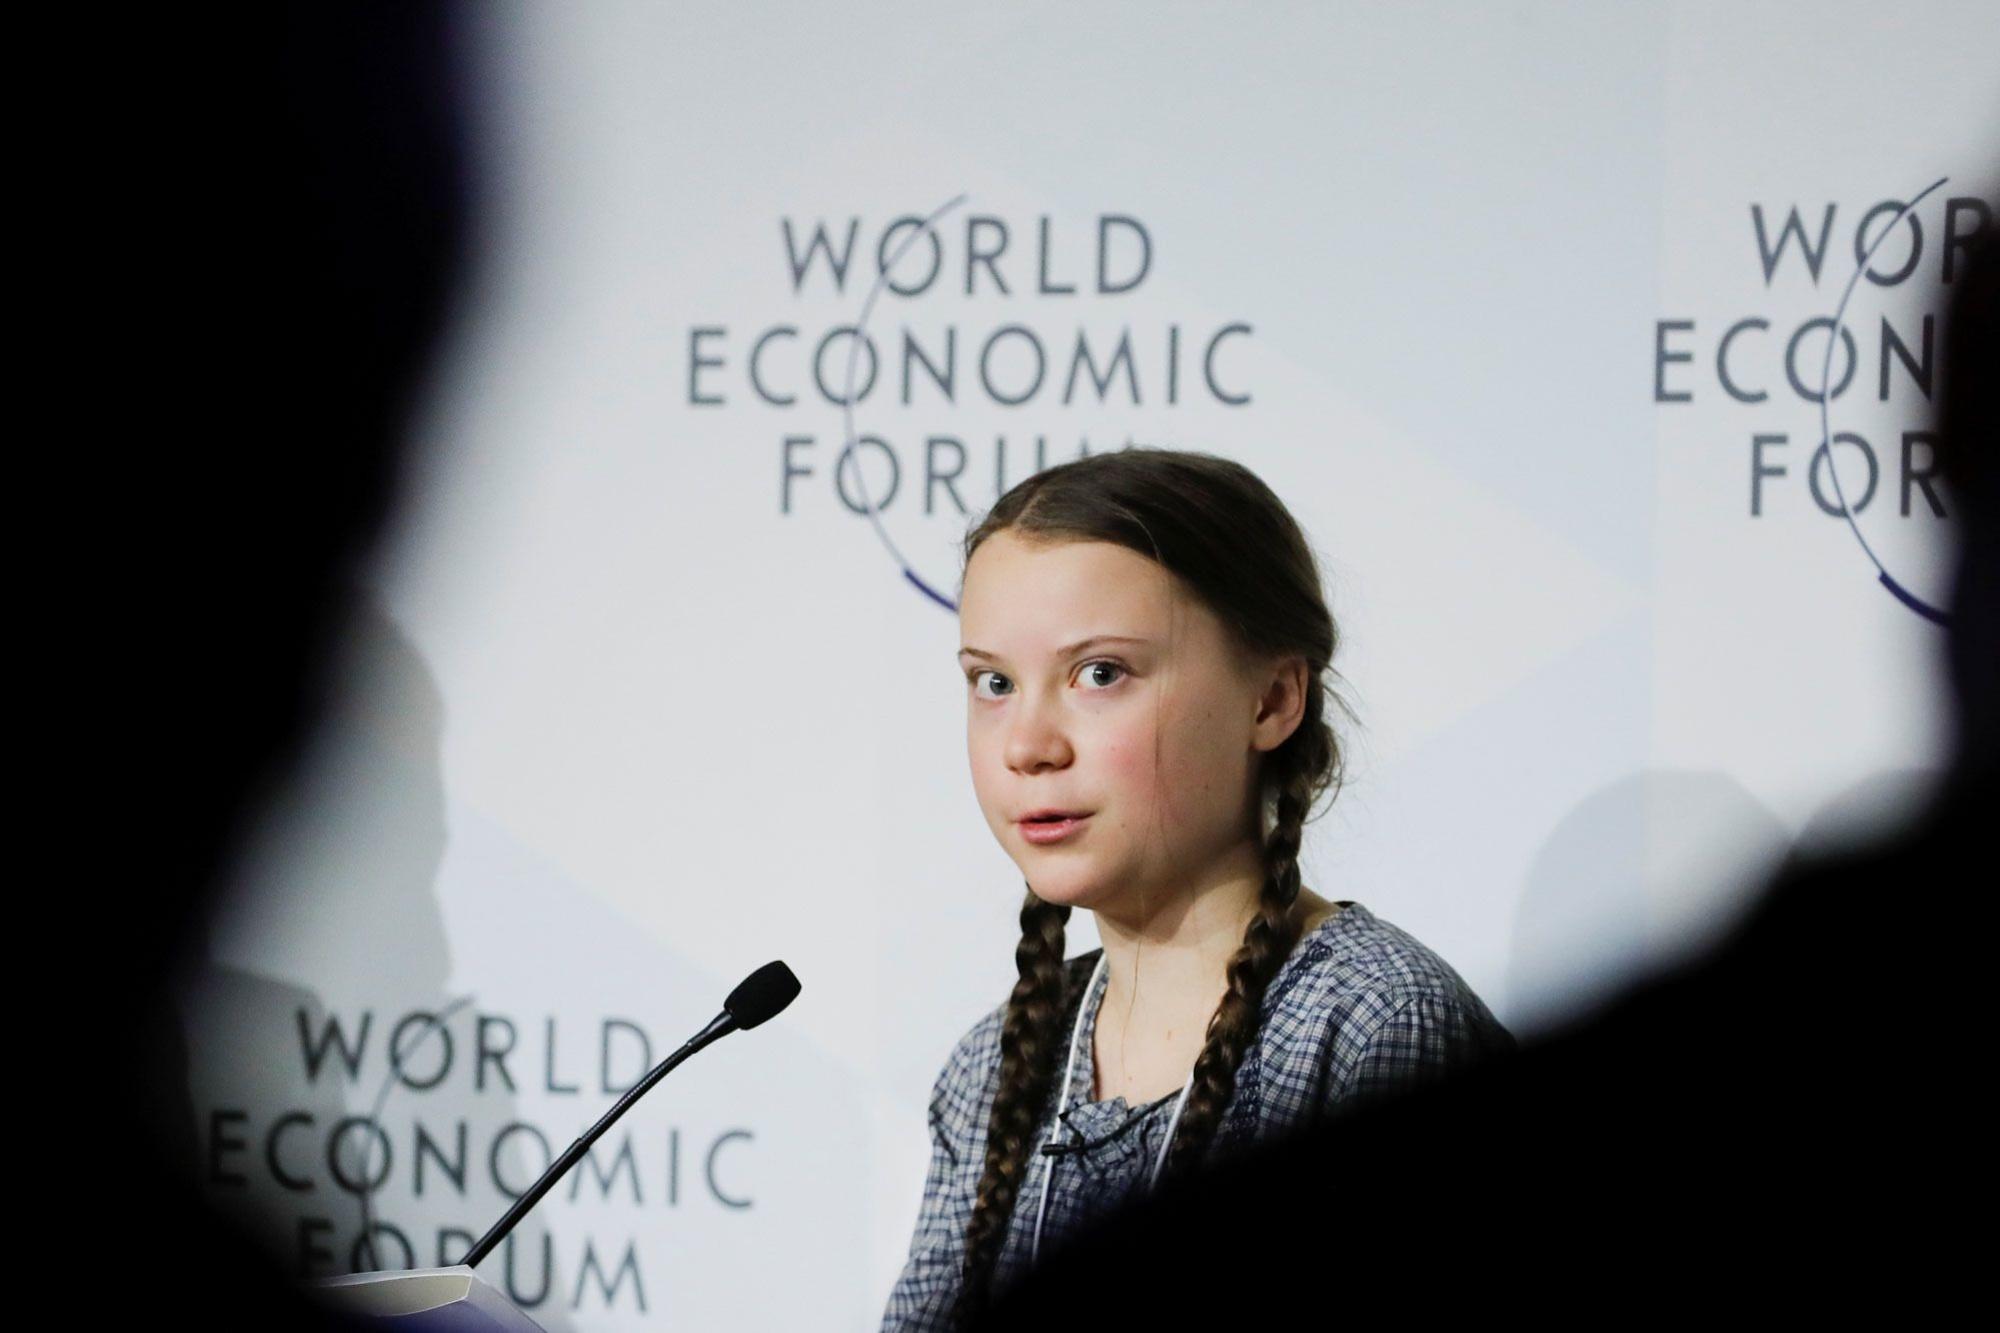 Greta Thunberg (16) kreeg op haar elfde de diagnoses autismespectrumstoornis en selectief mutisme, maar spreekt vandaag wereldleiders toe als klimaatactiviste. 